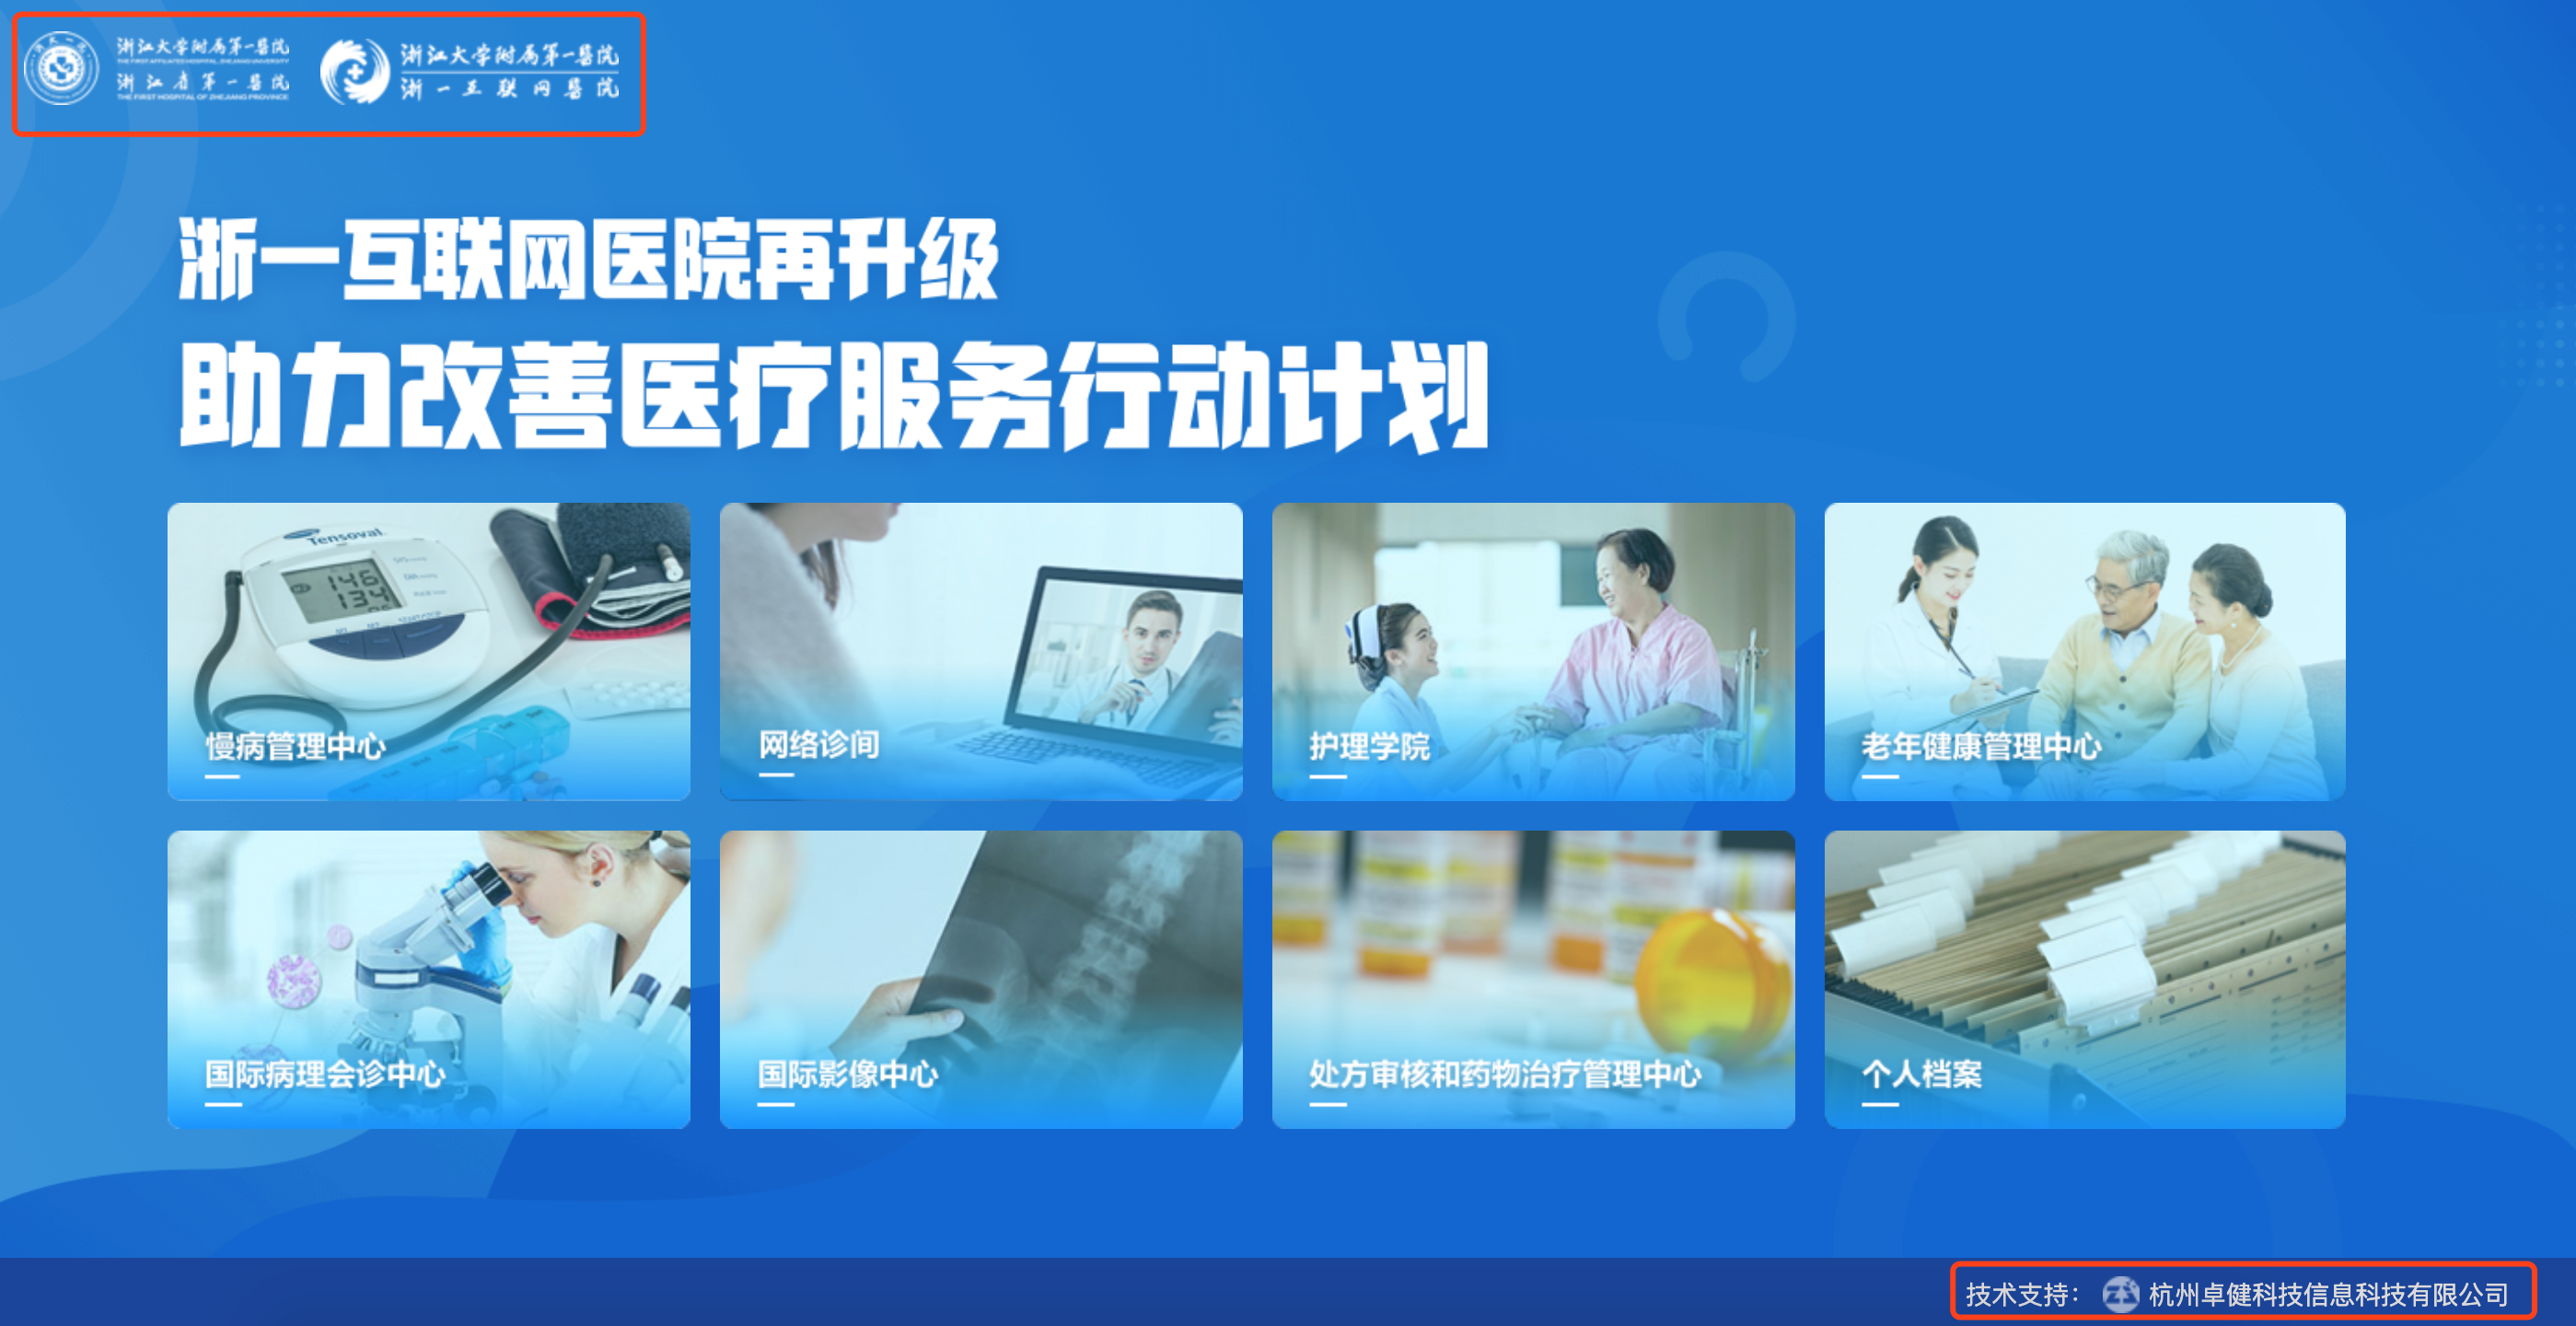 北京这21家医院已获批互联网诊疗资质并上线运行